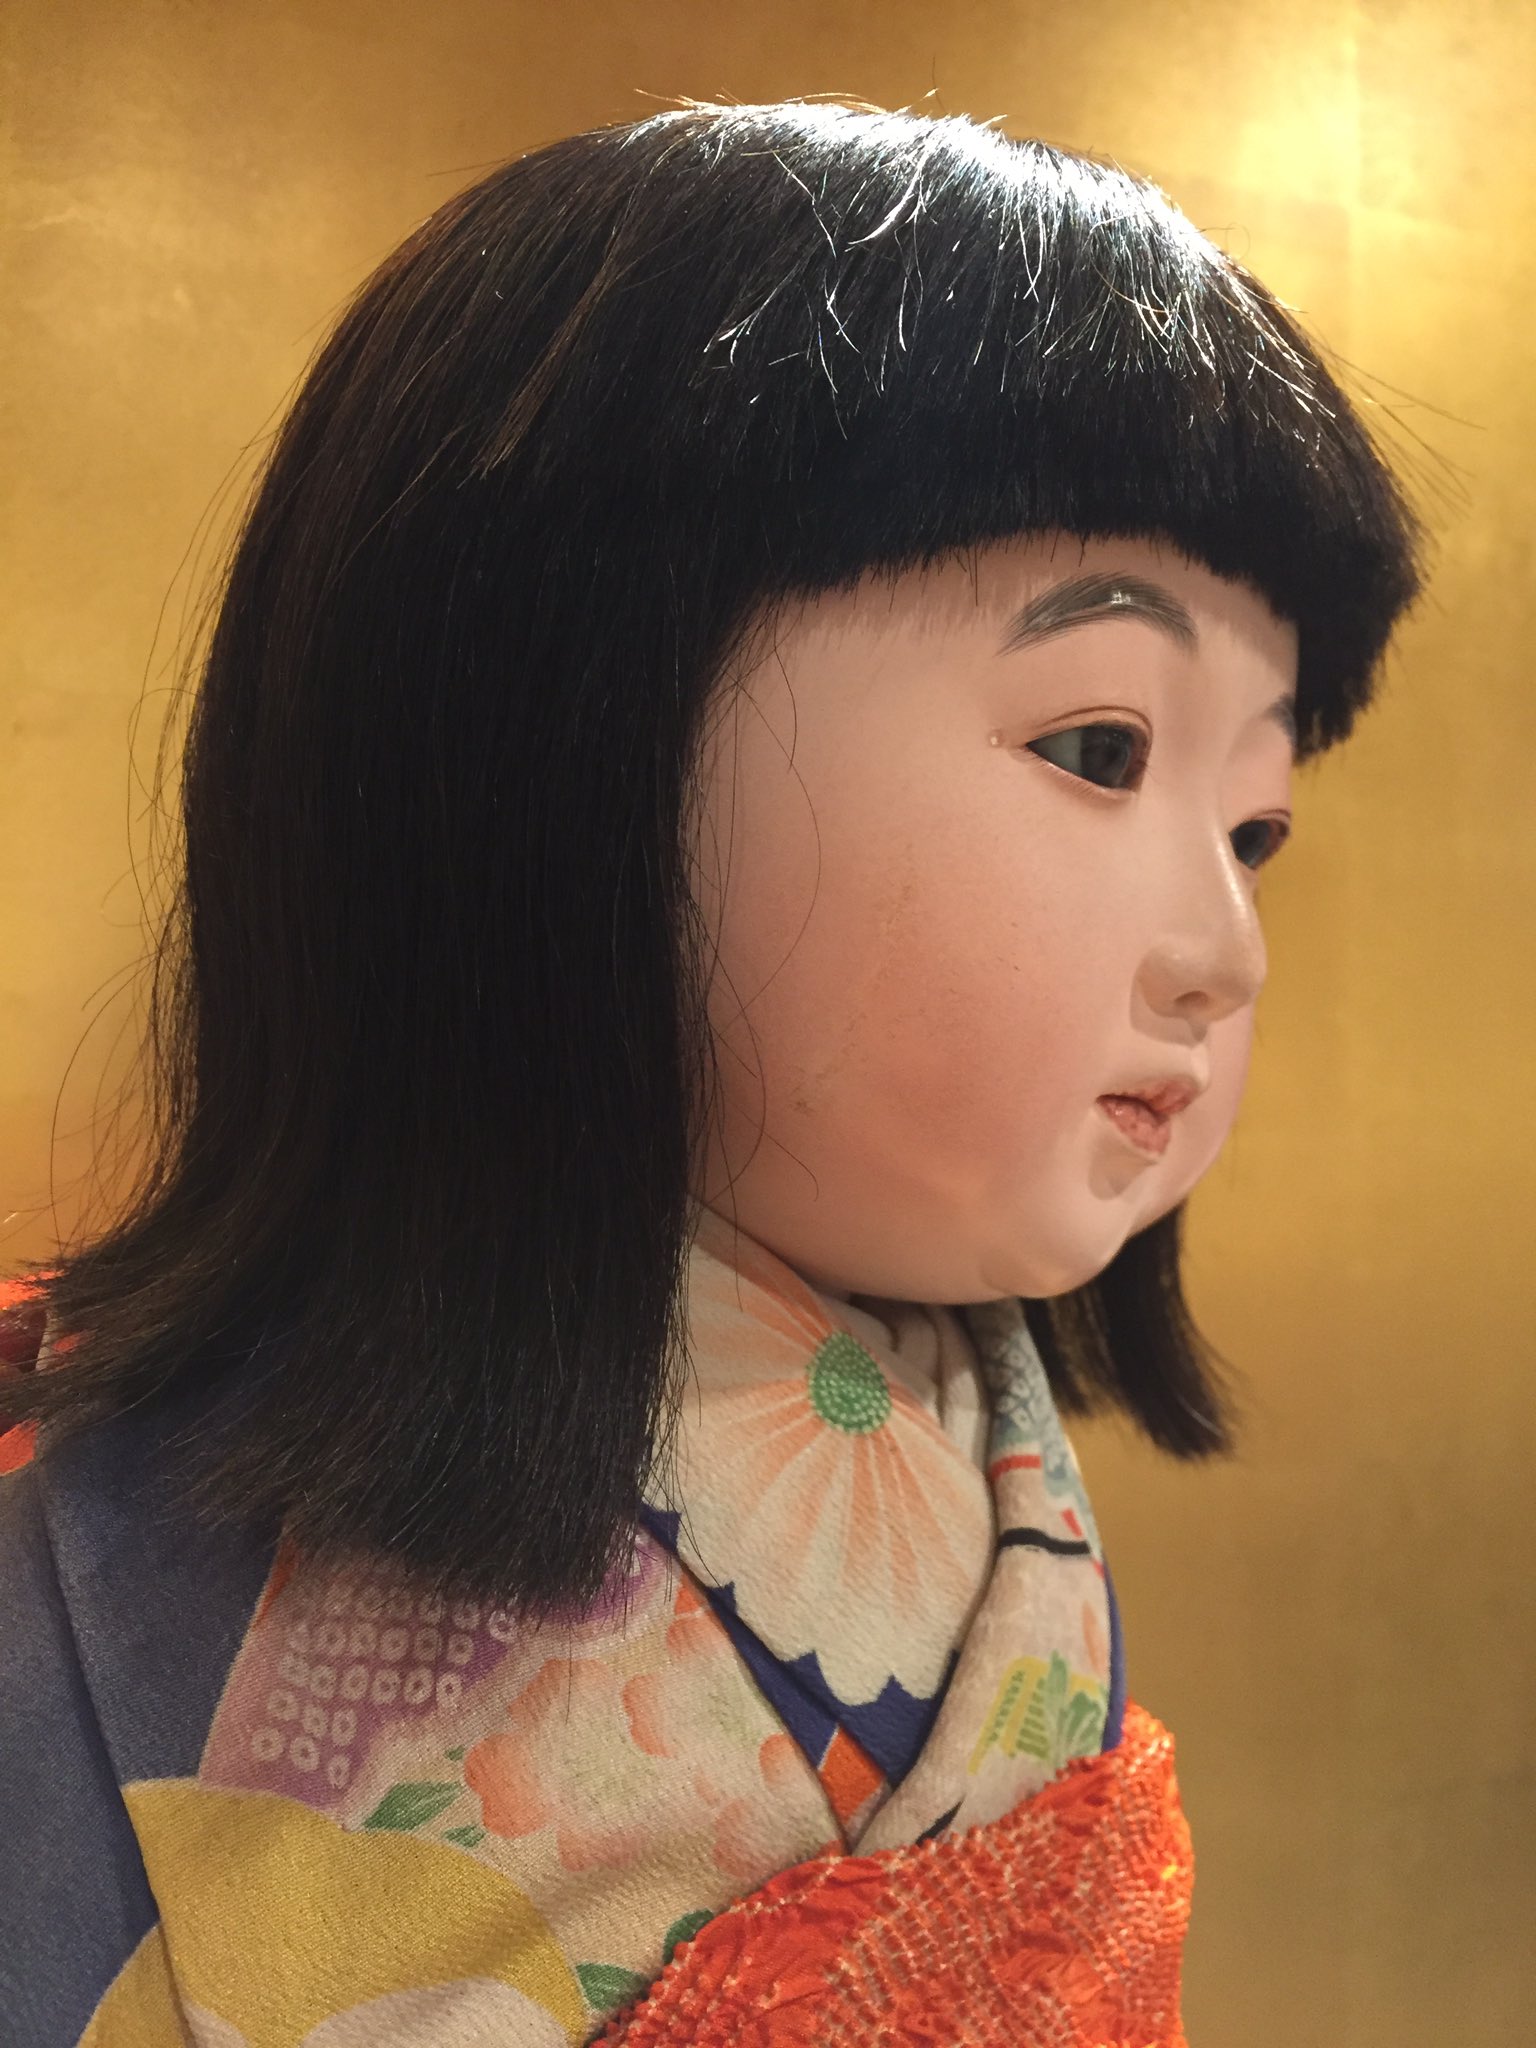 川北すピ子 on Twitter: "明日は日米の親善人形90周年にちなんだトークショーです！(青木勝氏による) 今年のうらら展では7名の市松